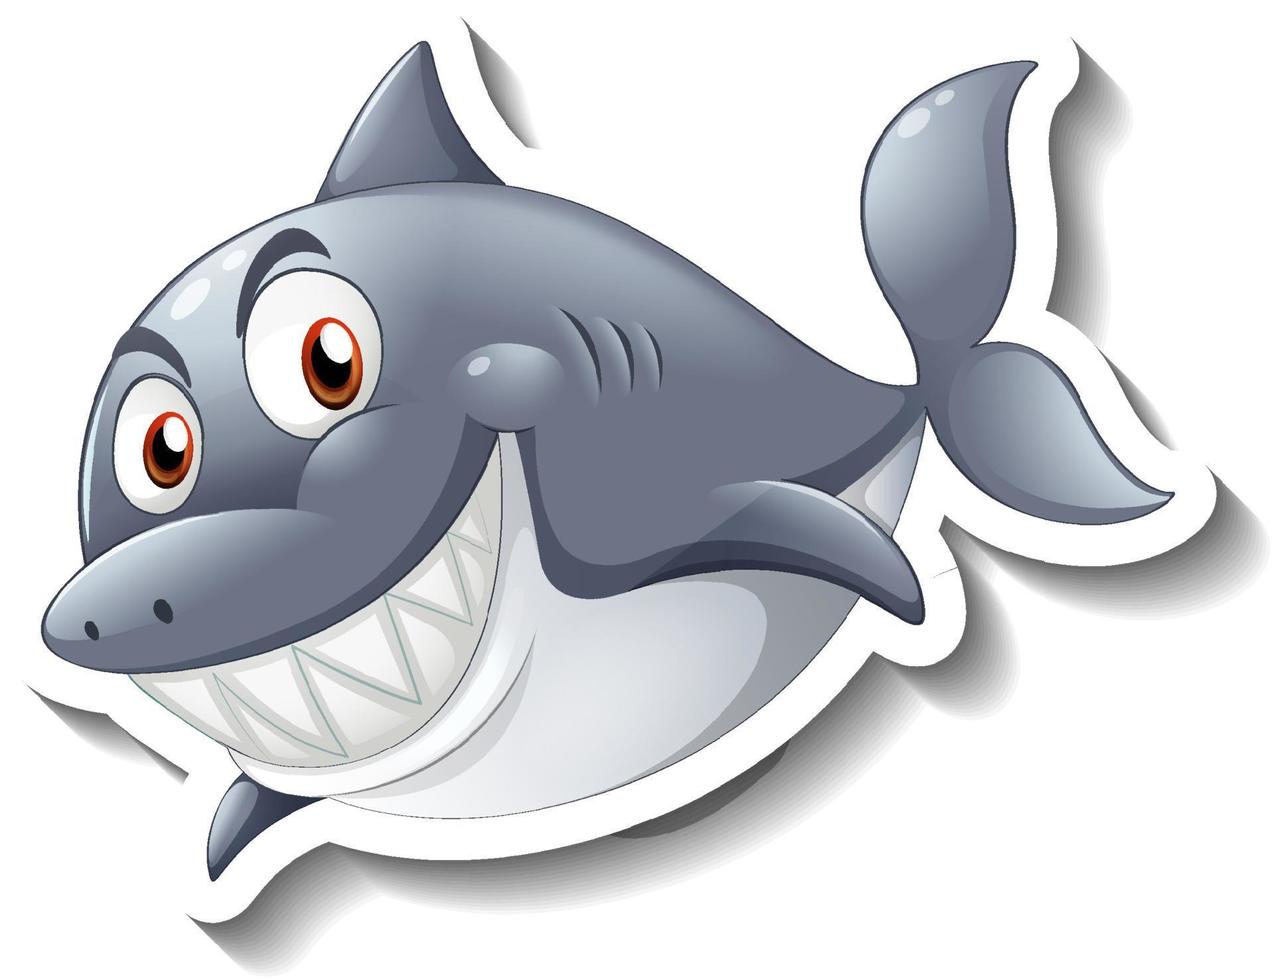 Smiling shark cartoon sticker vector